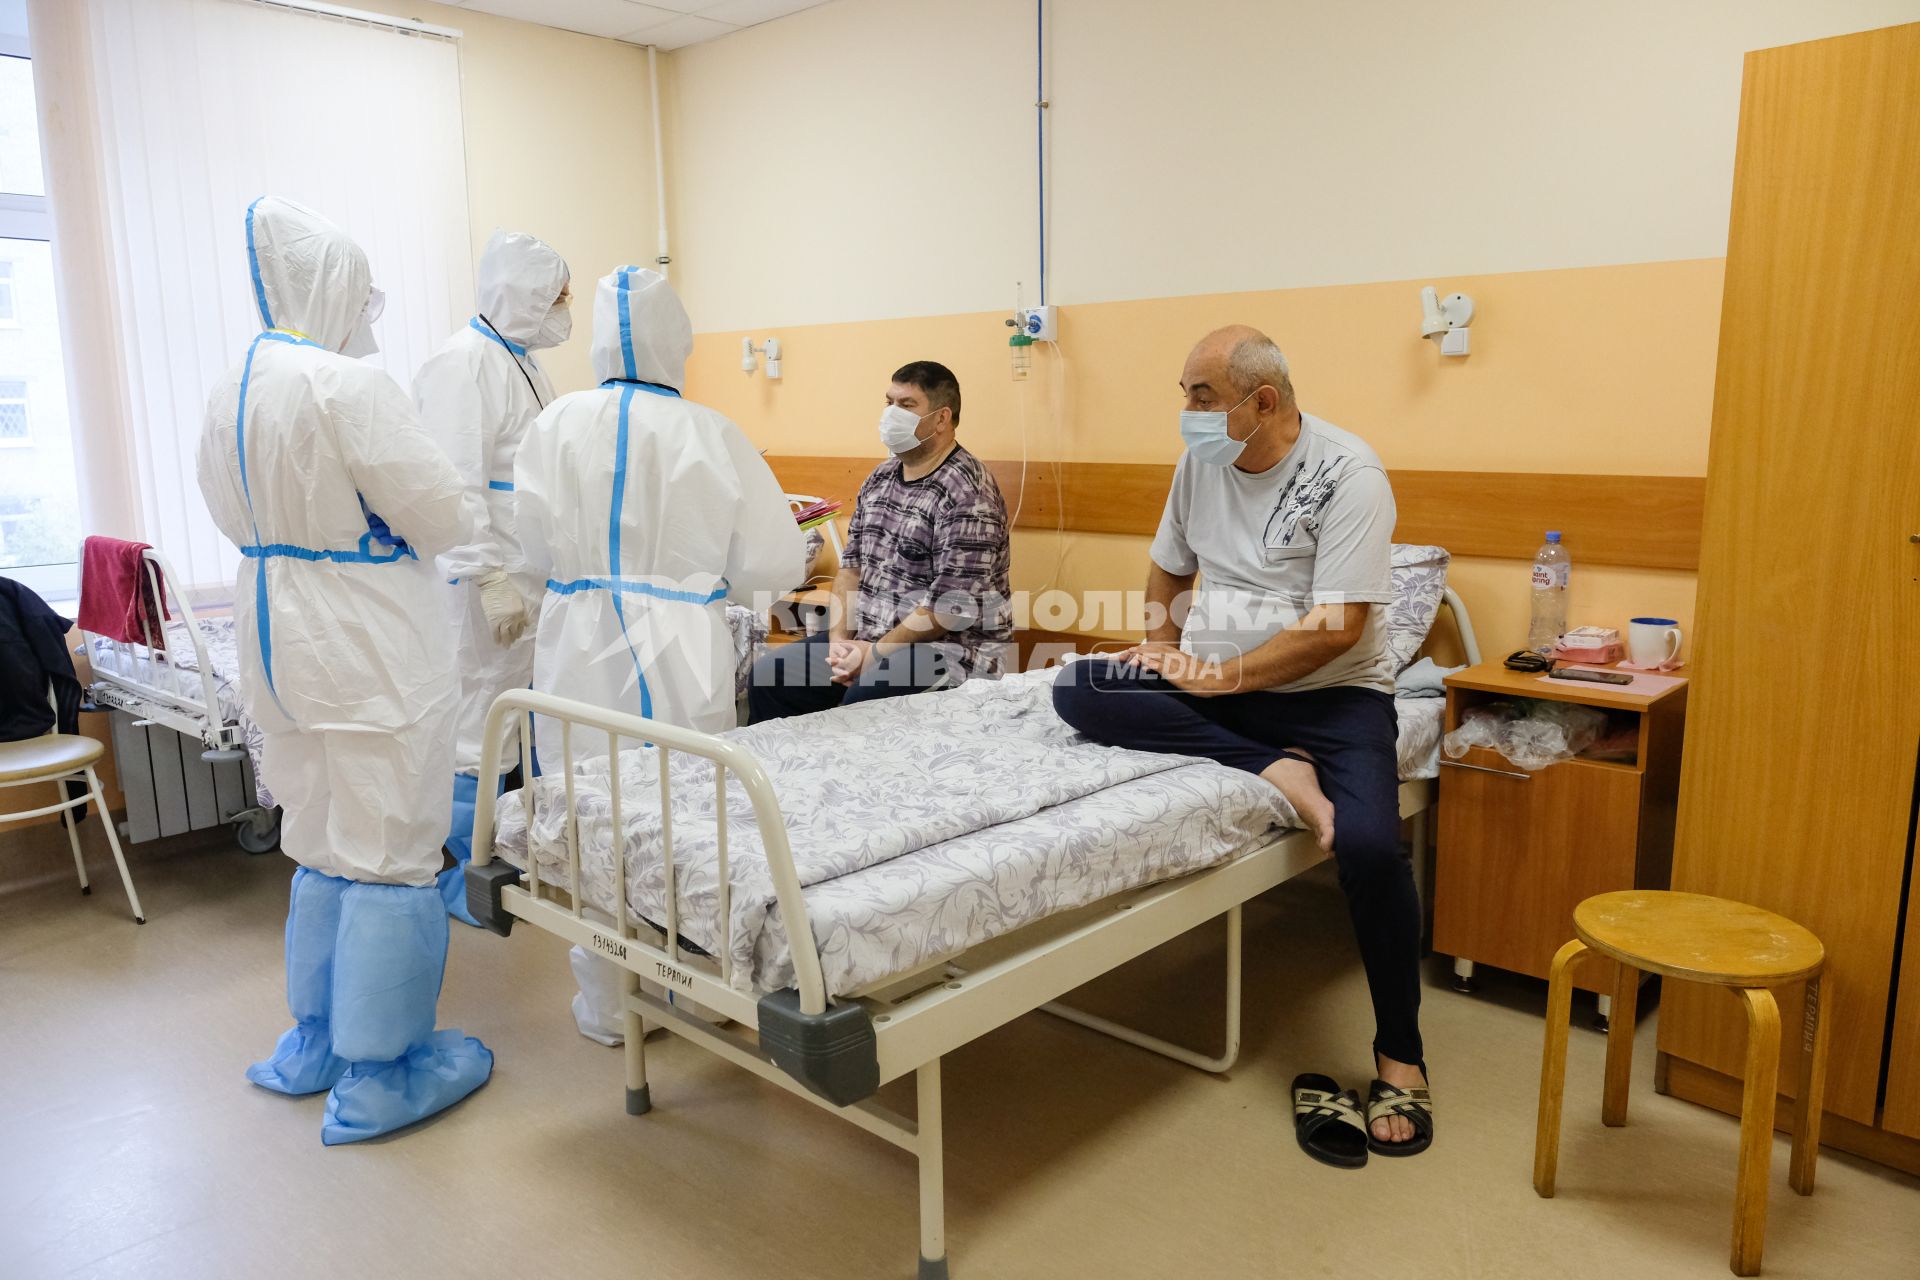 Санкт-Петербург. Медицинские работники и пациенты в Александровской  больнице, где оказывают помощь пациентам с коронавирусной инфекцией COVID-19.